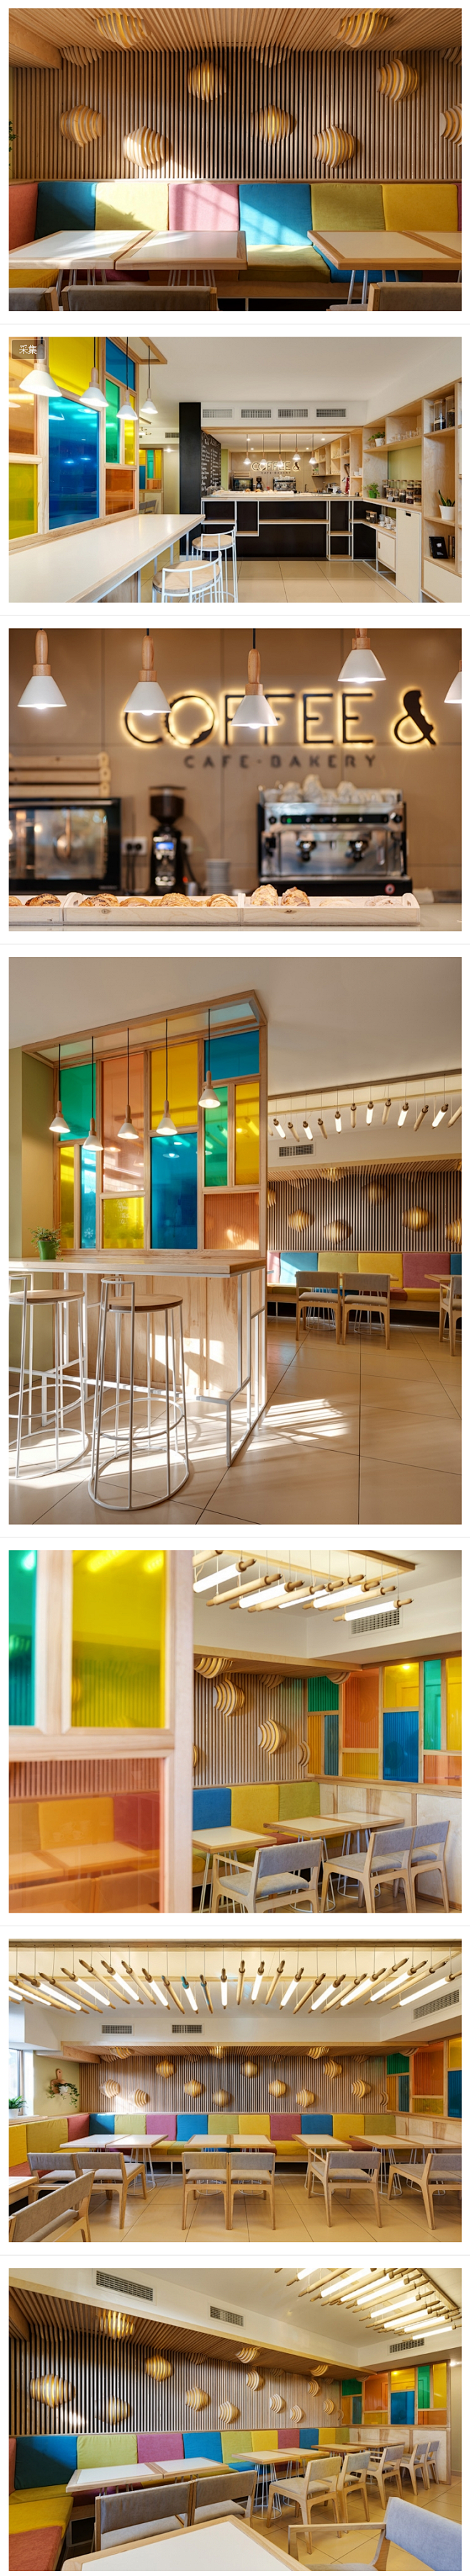 羊角包灯具的基辅咖啡店室内设计 - YU...